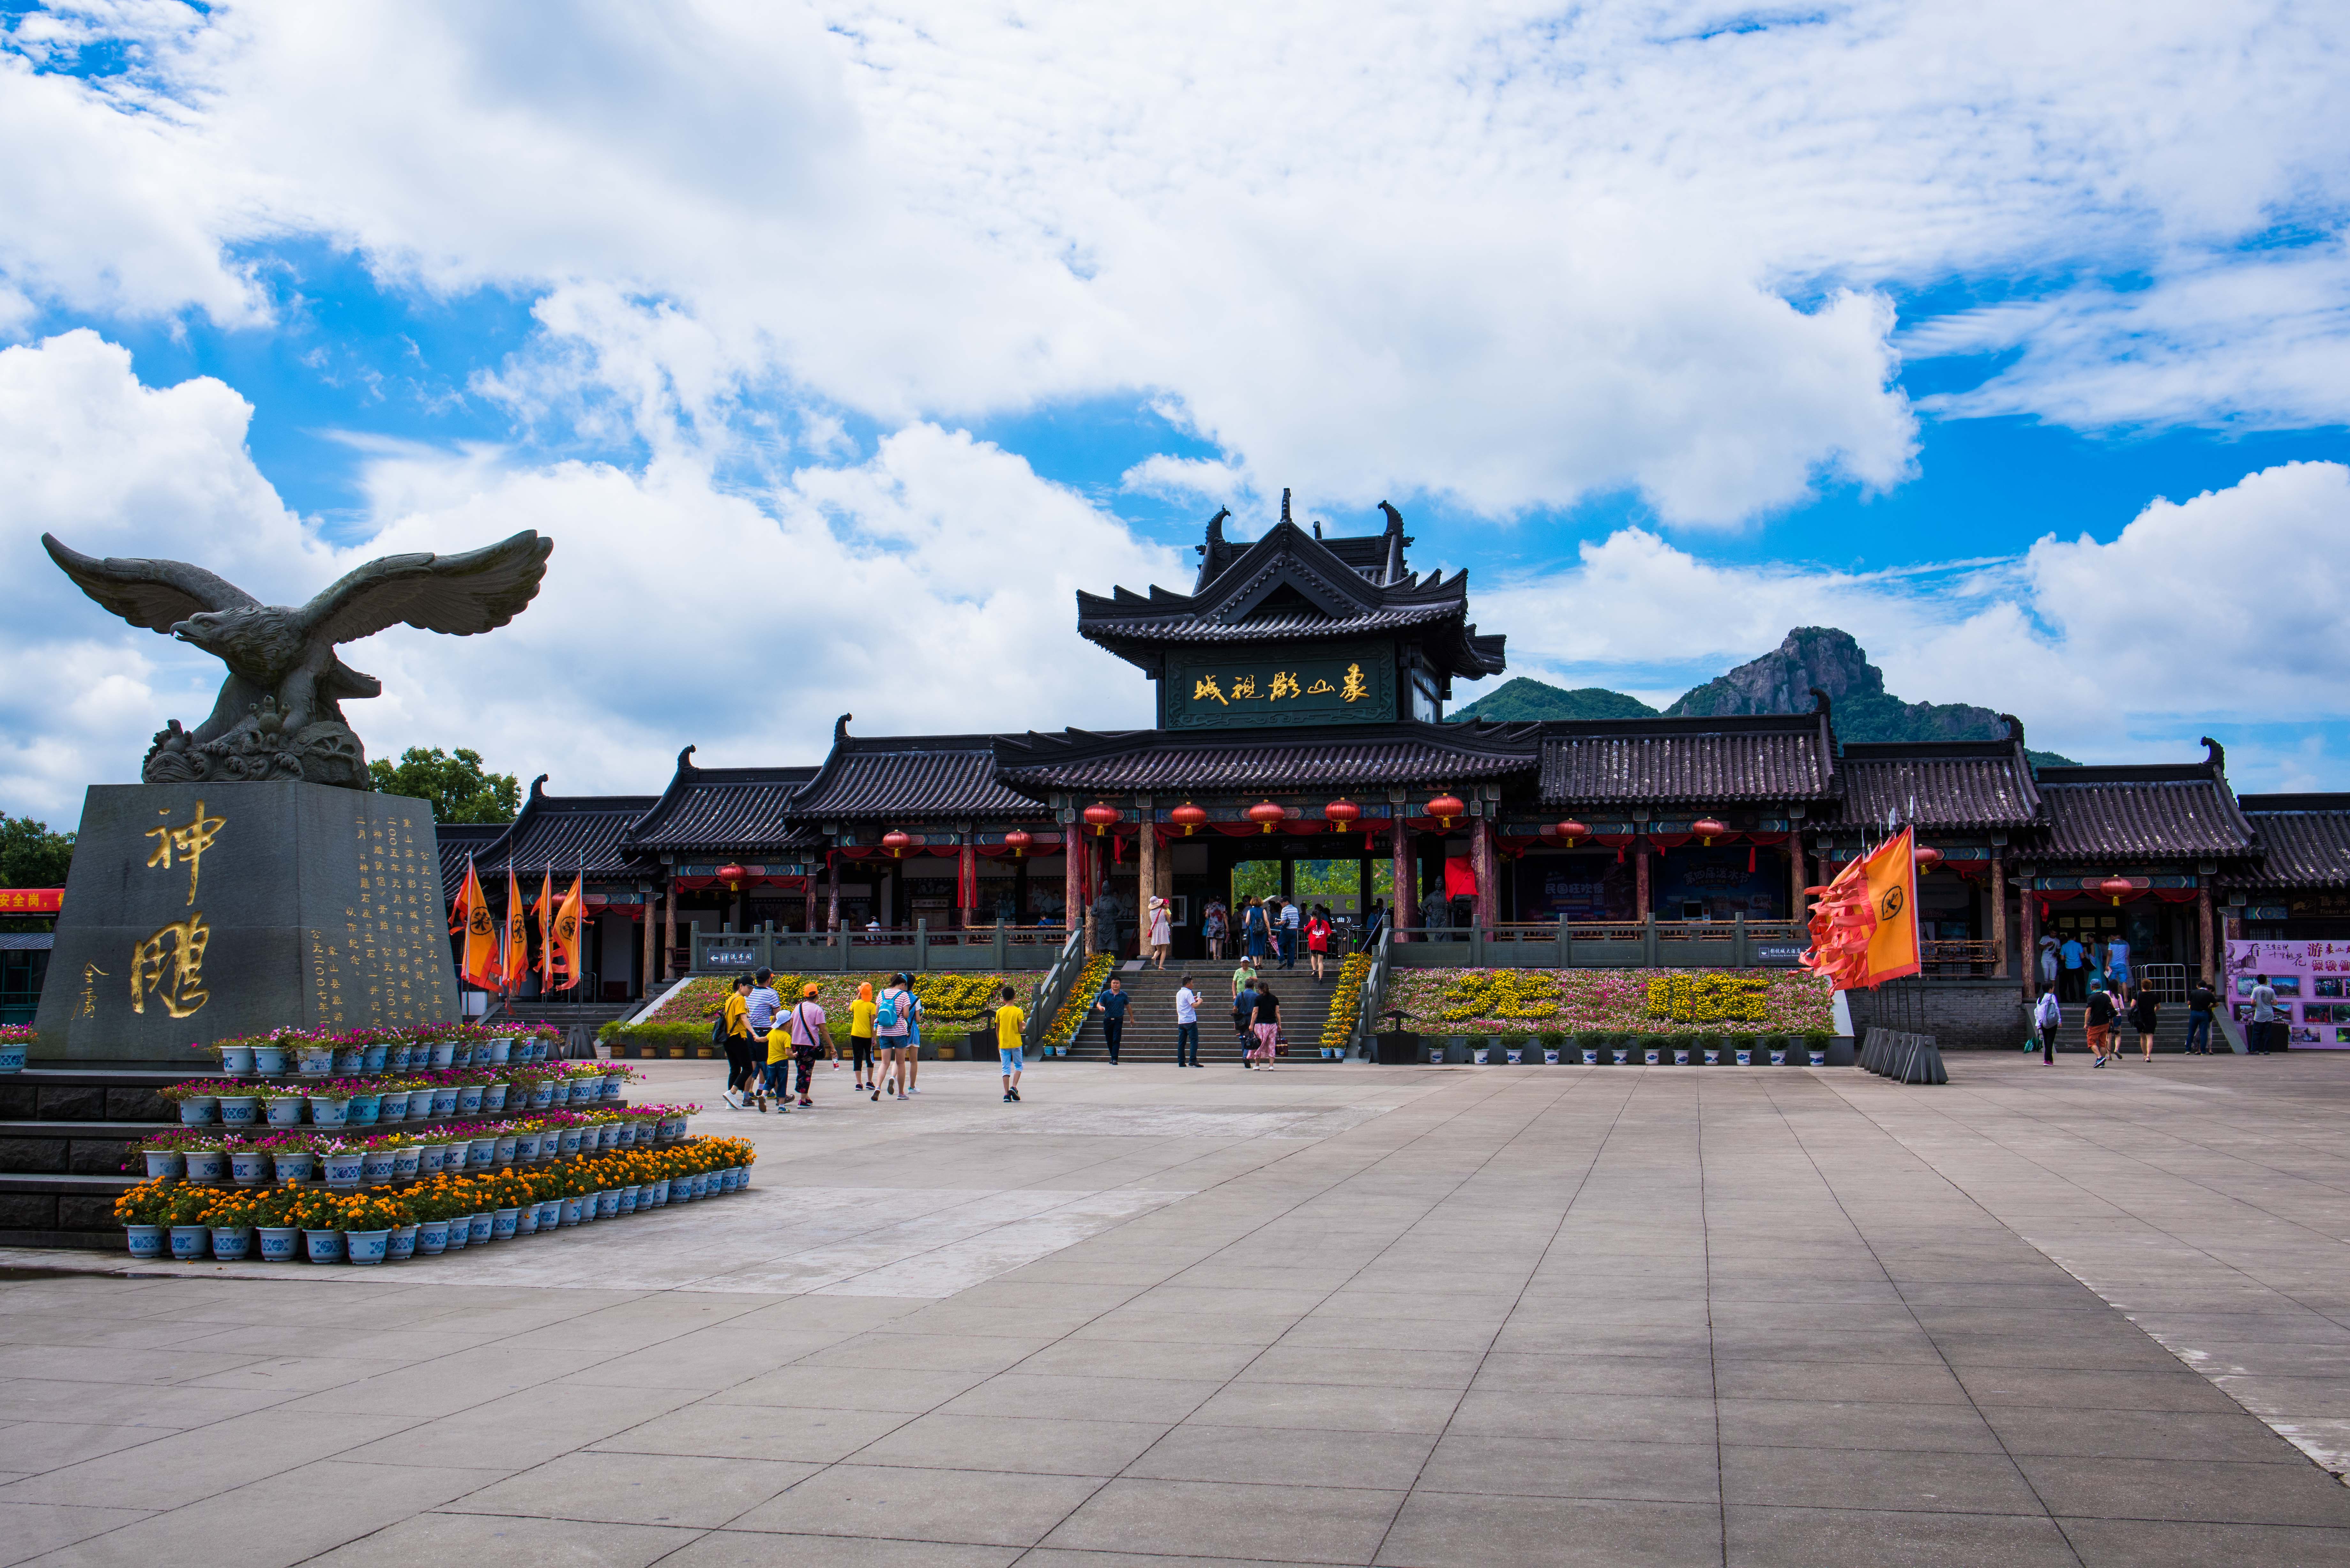 原创 中国单体建筑最大的影视城就位于浙江宁波,数千名导演明星都来过